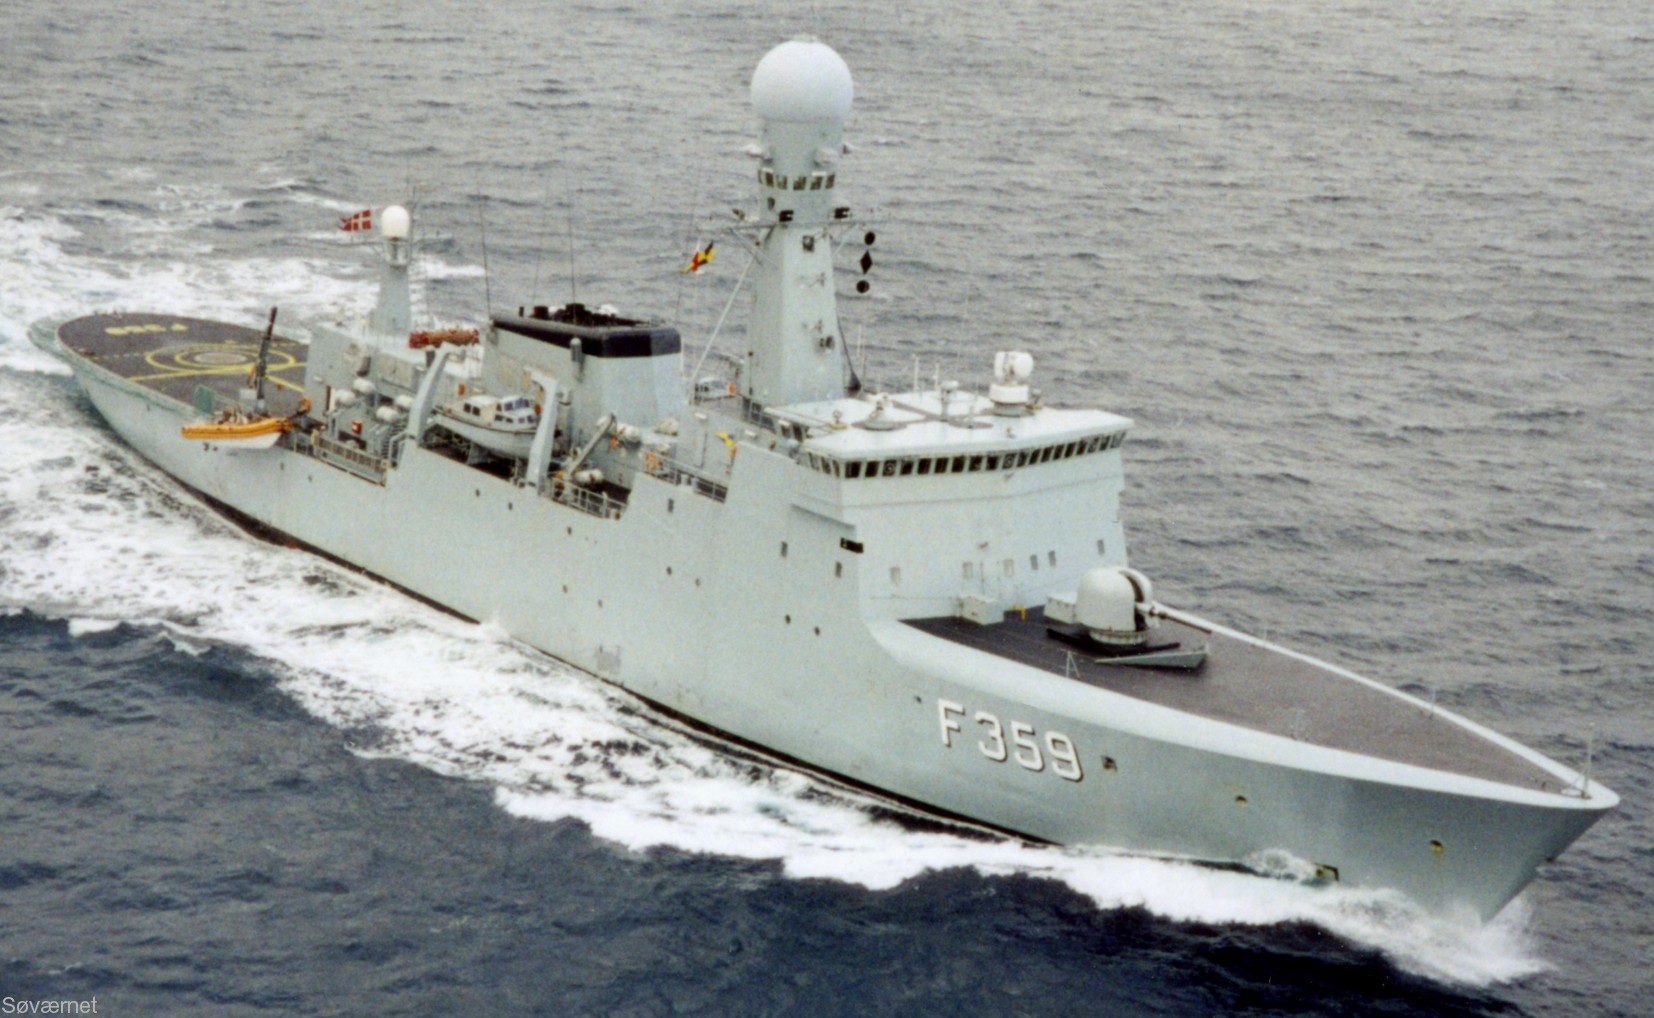 f-359 hdms vaedderen thetis class ocean patrol frigate royal danish navy kongelige danske marine kdm inspektionsskibet 09